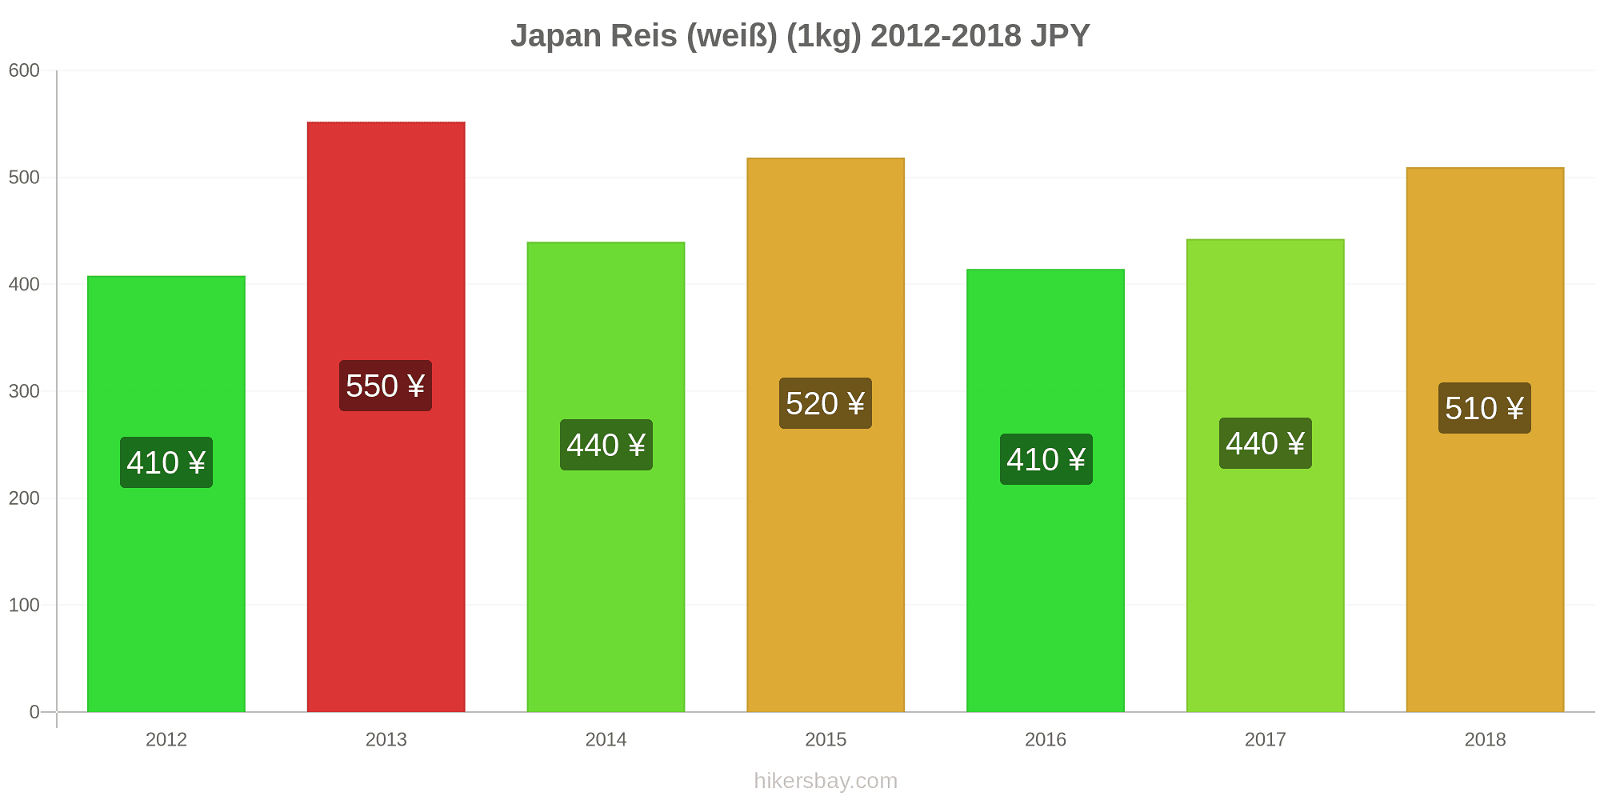 Japan Preisänderungen Reis (weiß) (1kg) hikersbay.com